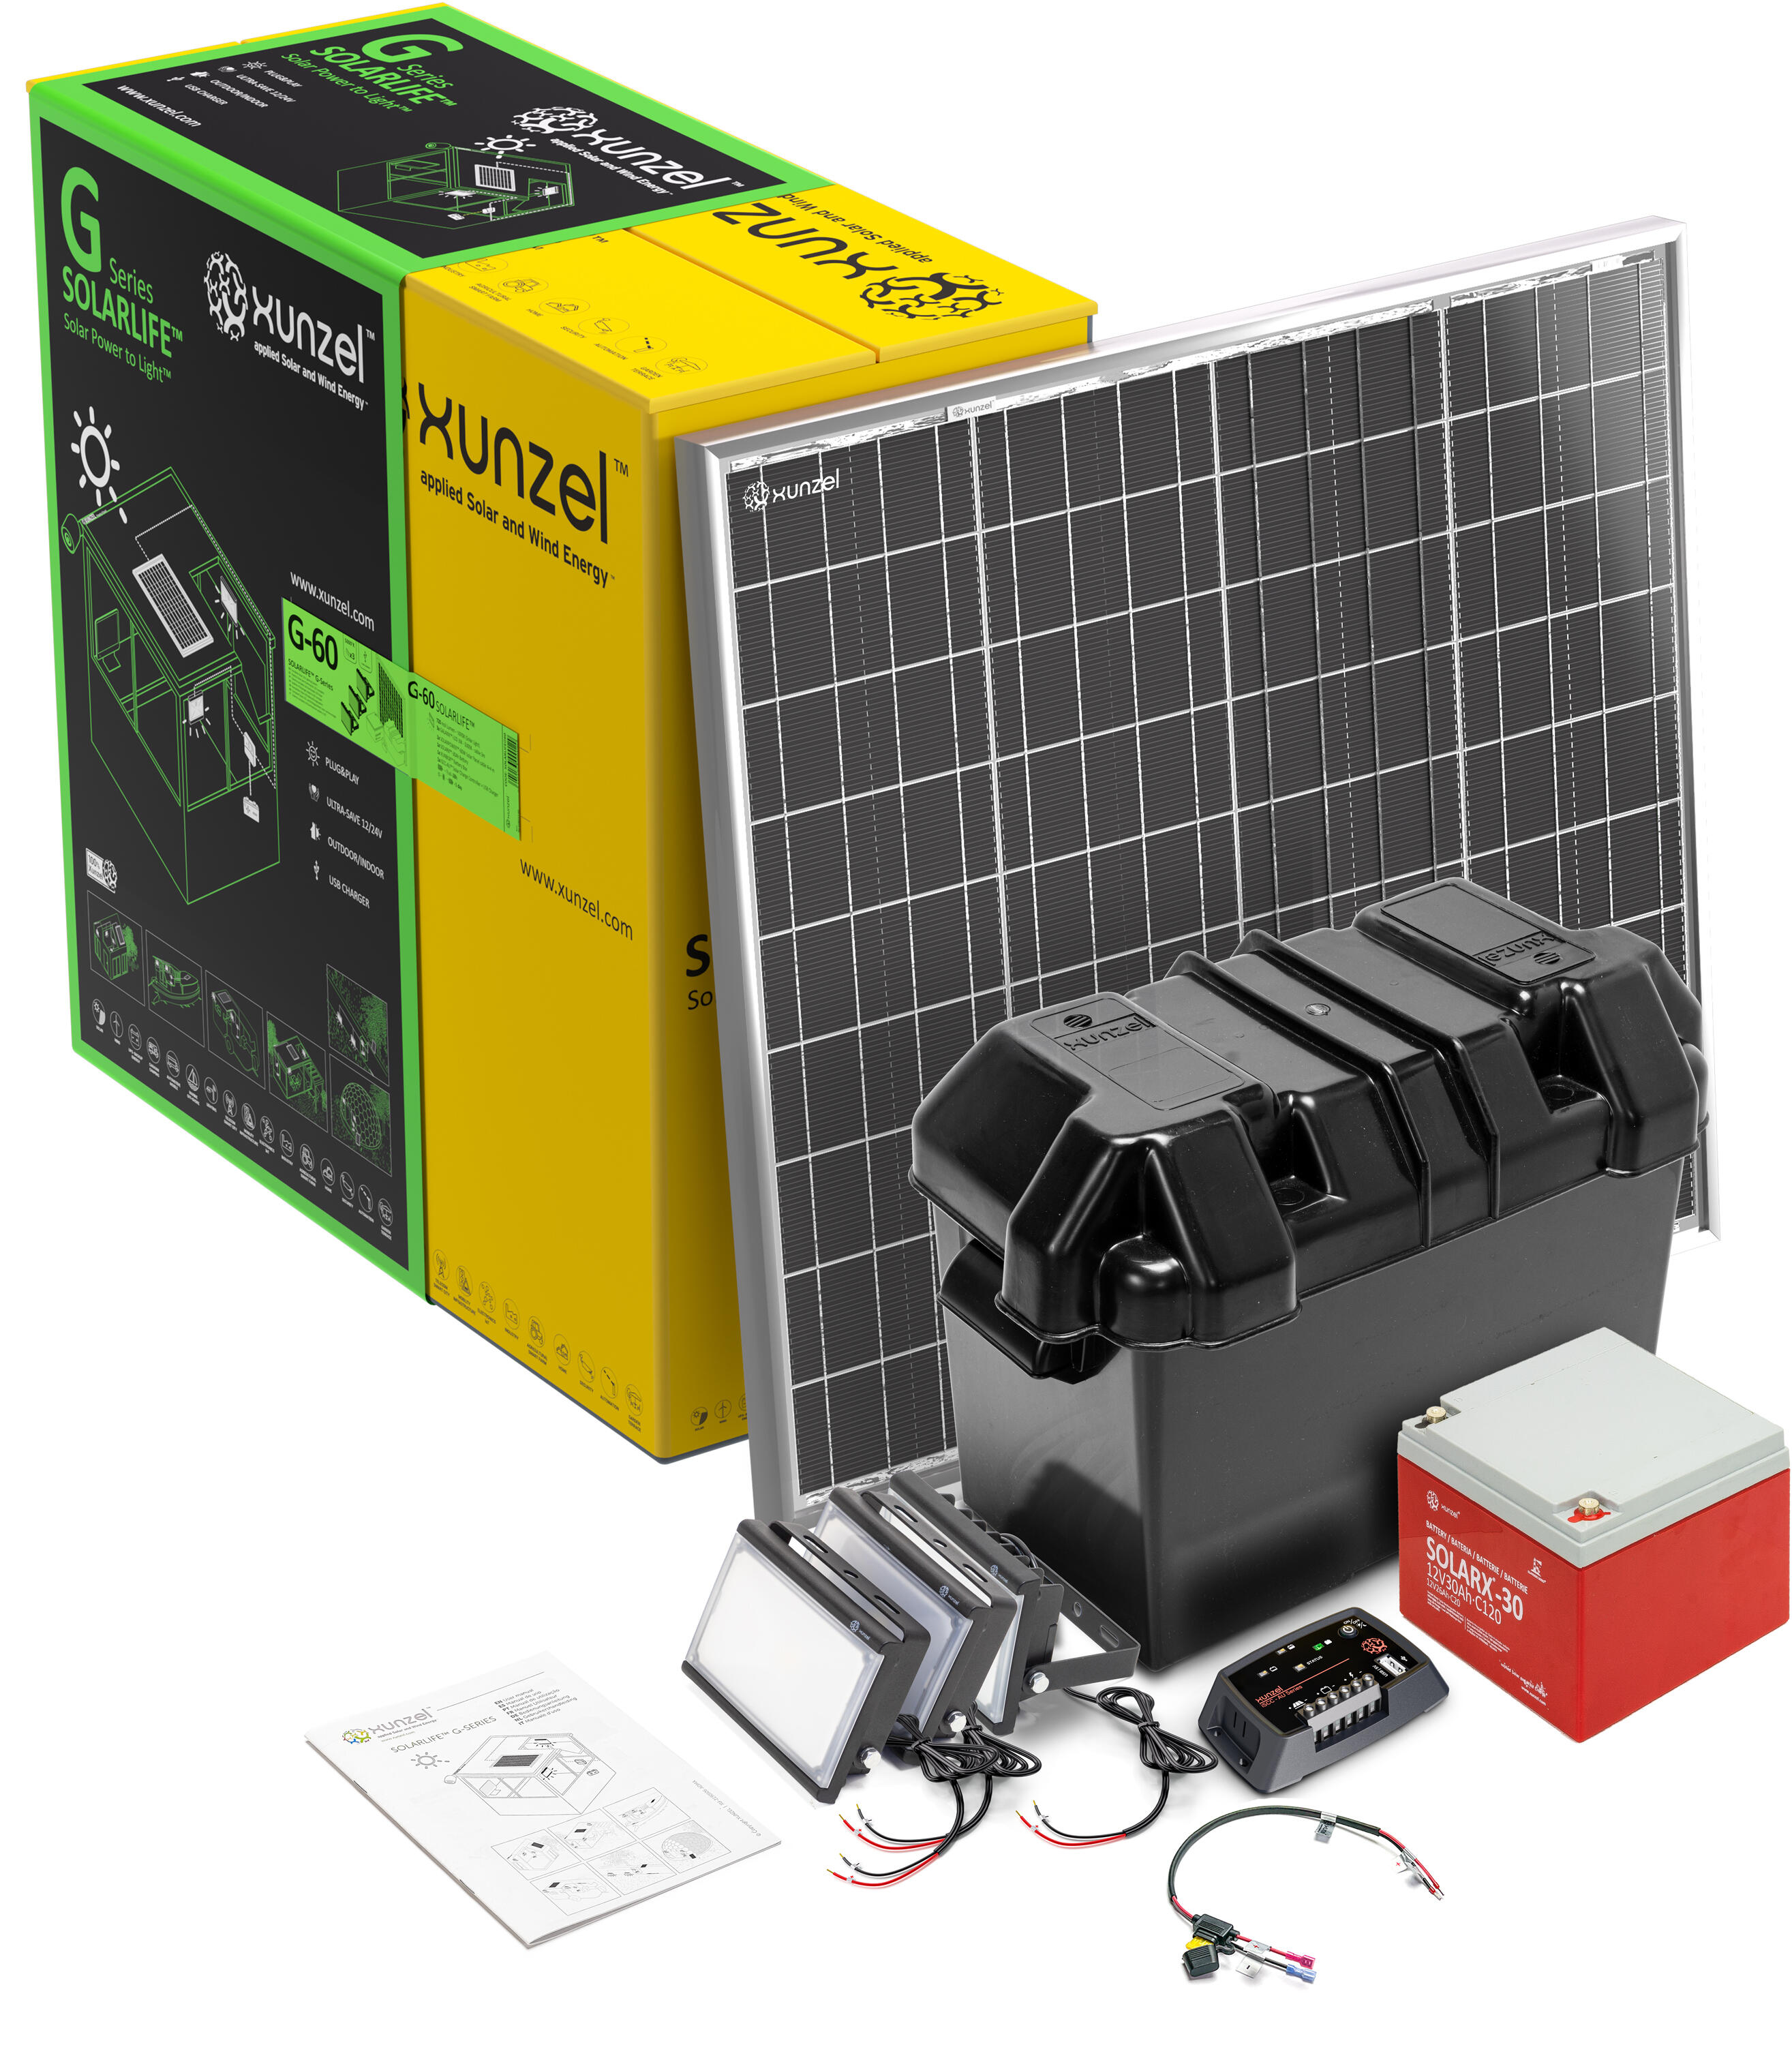 Kit solar de iluminación led de alta eficiencia solarlife-xunzel-g60